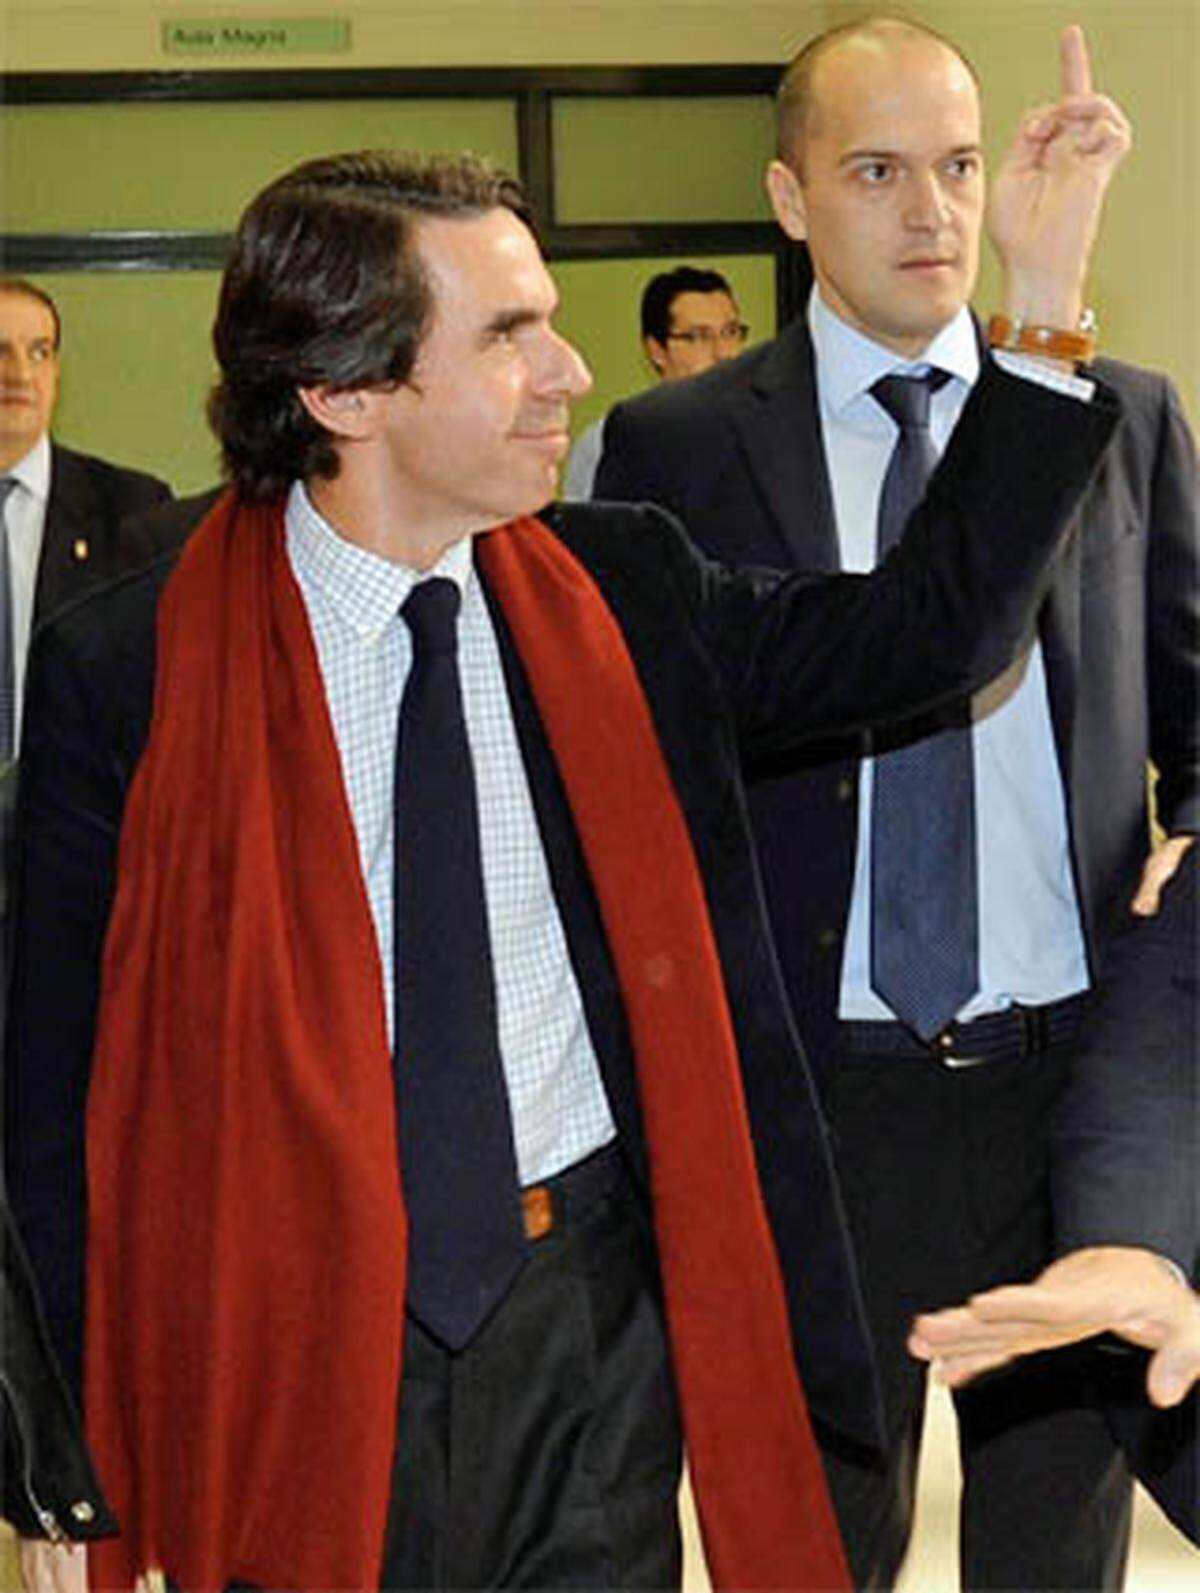 Der Spanier, sonst auch kein Gentleman, lieferte den jüngsten Aufreger: José María Aznar, immerhin Expremier seines Landes, zeigte der Jugend den Finger. Studenten hatten ihn an der Universität von Oviedo als „Faschisten“ und „Mörder“ beschimpft, weil er den Irak-Krieg unterstützt hatte – als „Arschkriecher George W. Bushs“. Aznar konterte mit obszöner Geste. Die öffentliche Kritik ließ freilich nicht lange auf sich warten: „Unwürdig!“ Mit seinen schlechten Manieren steht Aznar international allerdings nicht allein da.